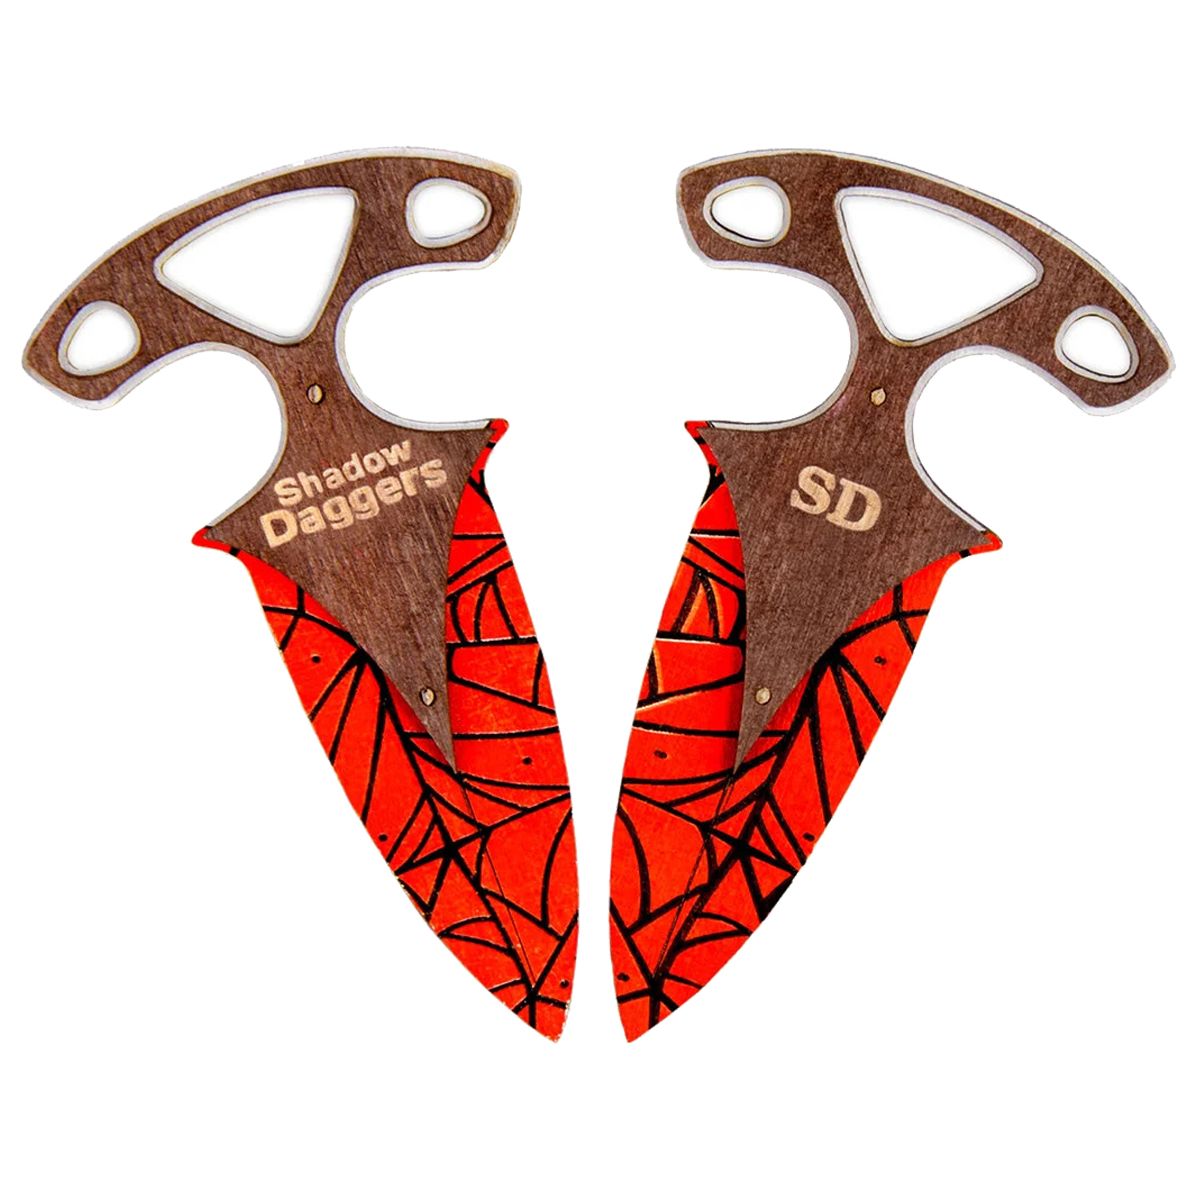 Ножи тычковые CS GO (Crimson Web)